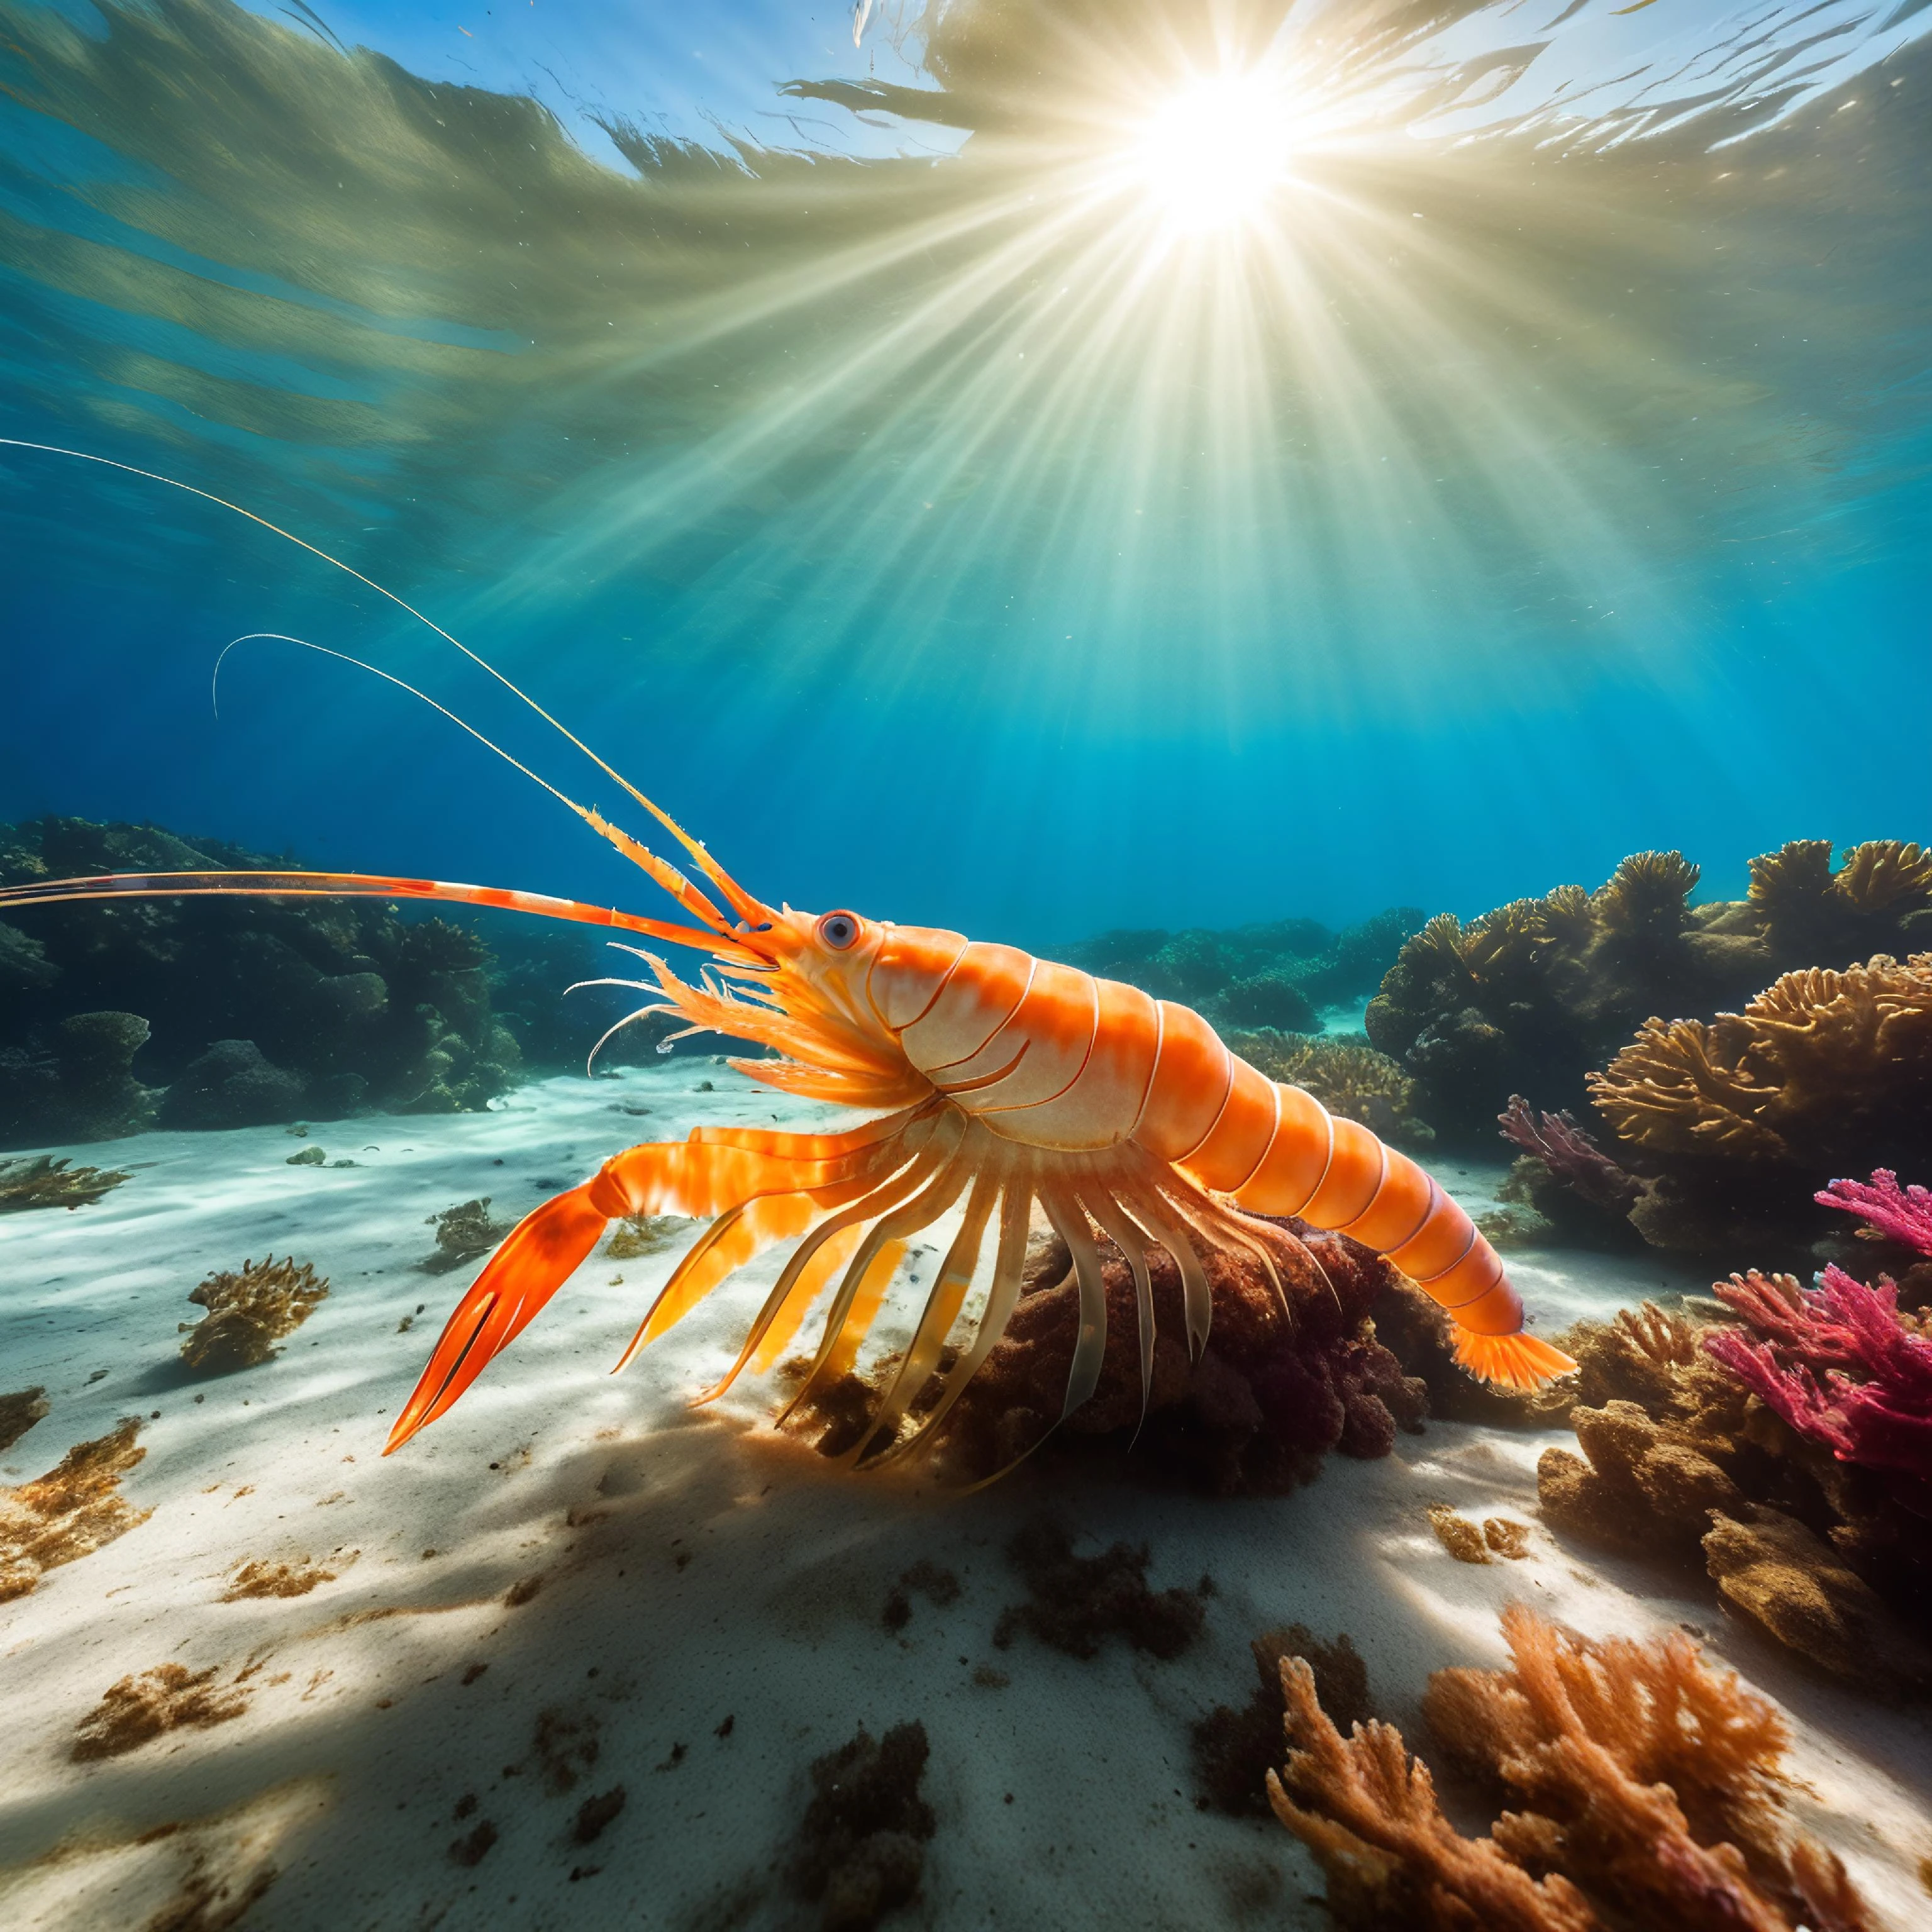 水下自然照片, 一只大虾在海底快速爬行, 追逐漂浮的海藻, 阳光透过水面, 沙质海床, 鲜艳的色彩